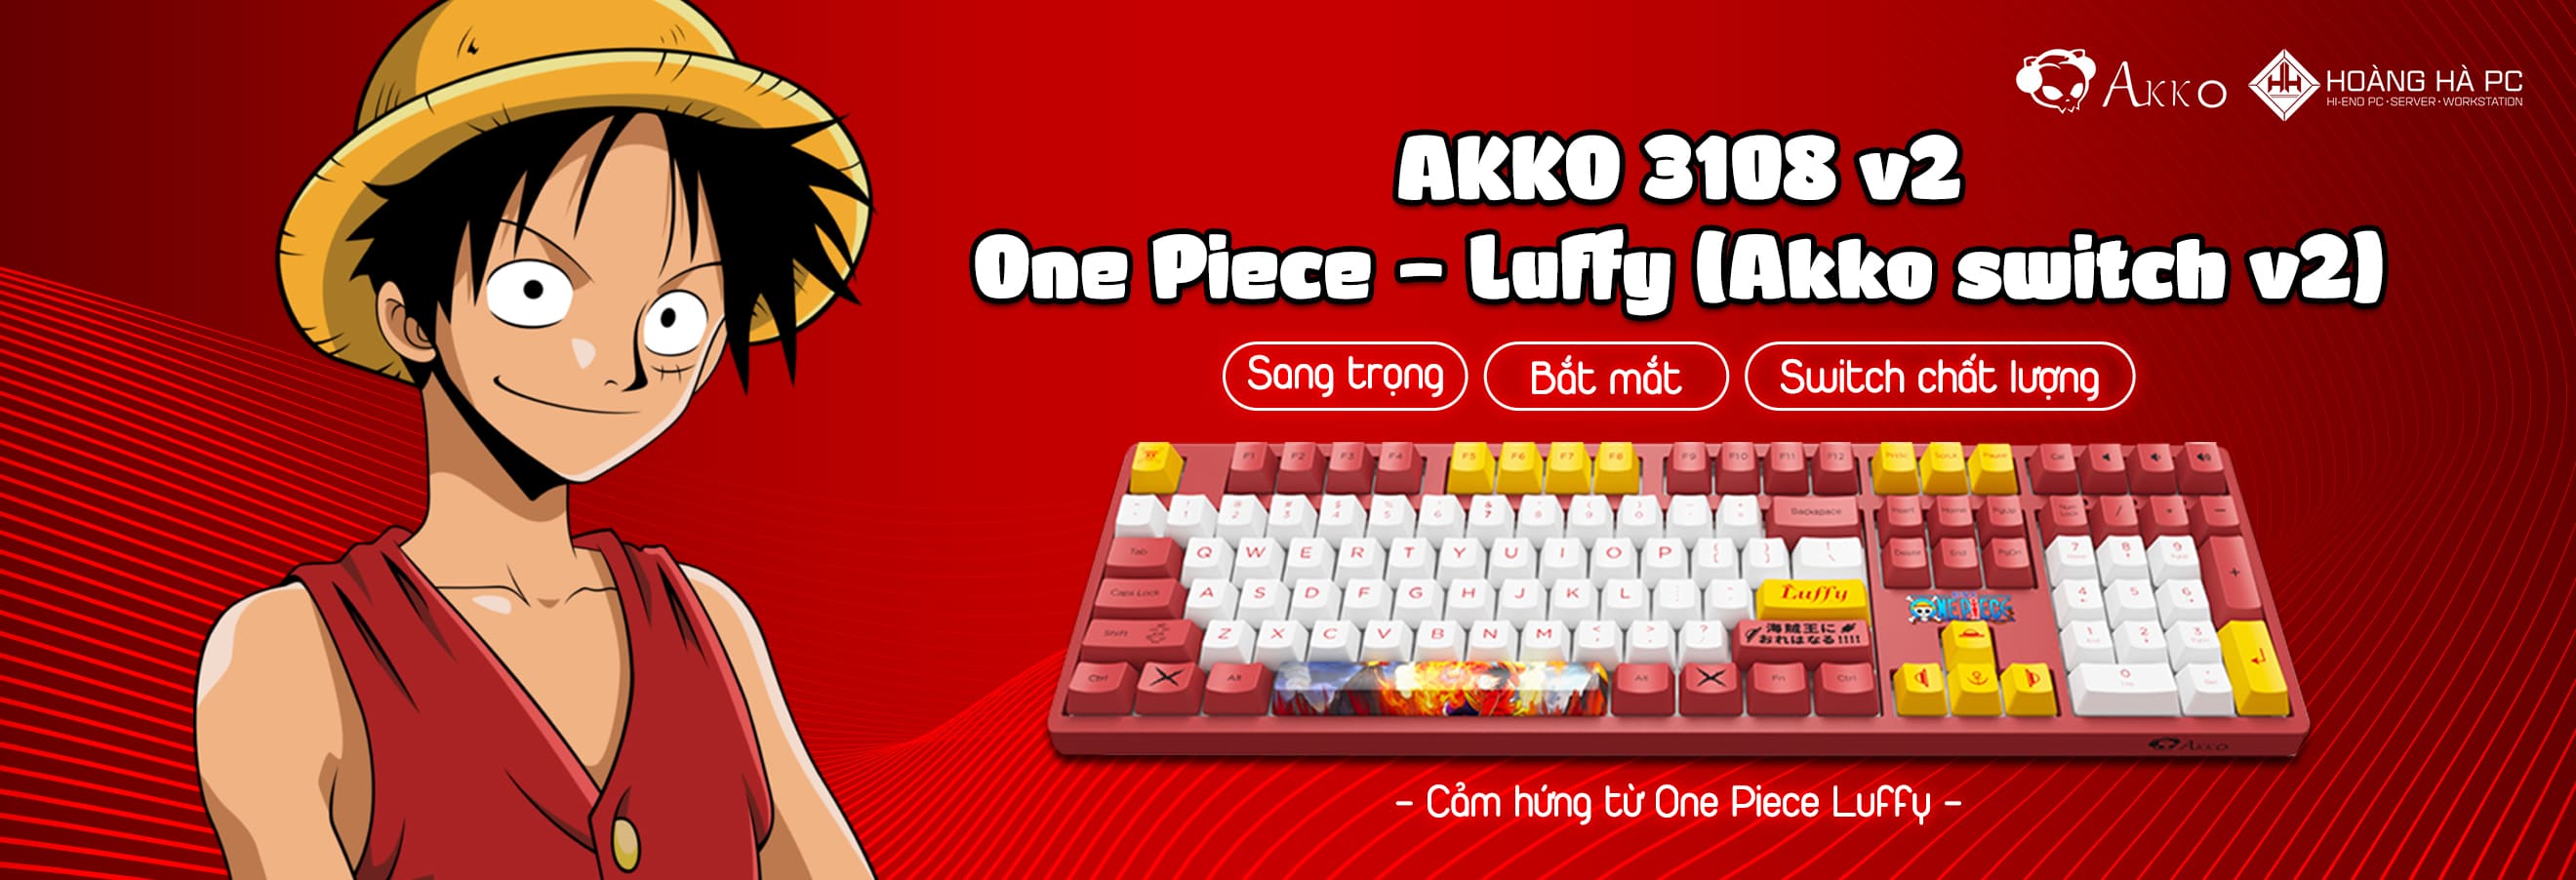 One Piece - Luffy 